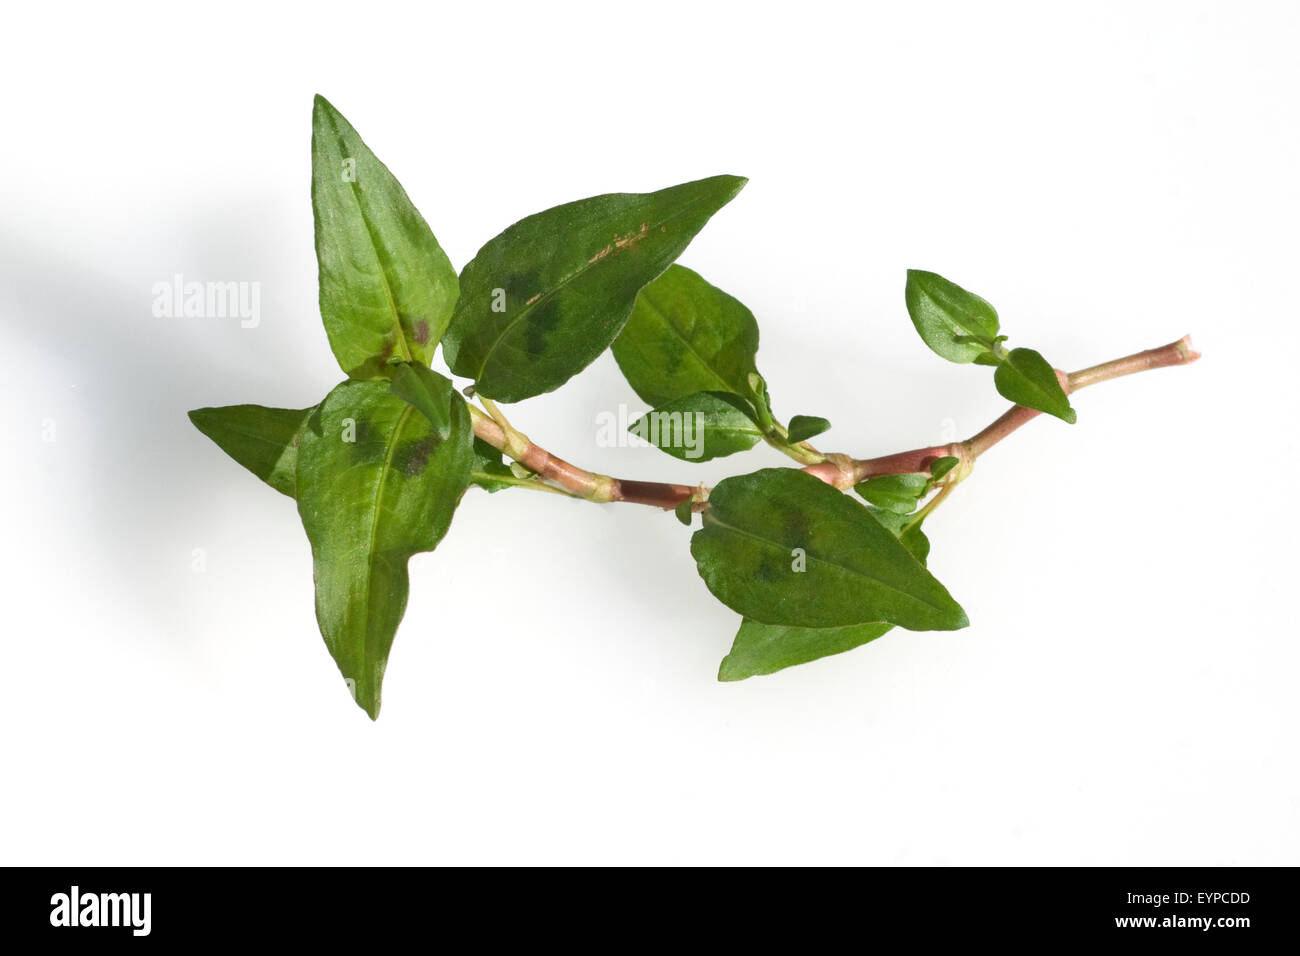 Viatnamesischer Koriander, Polygonum odoratum, Heilpflanzen, Stock Photo